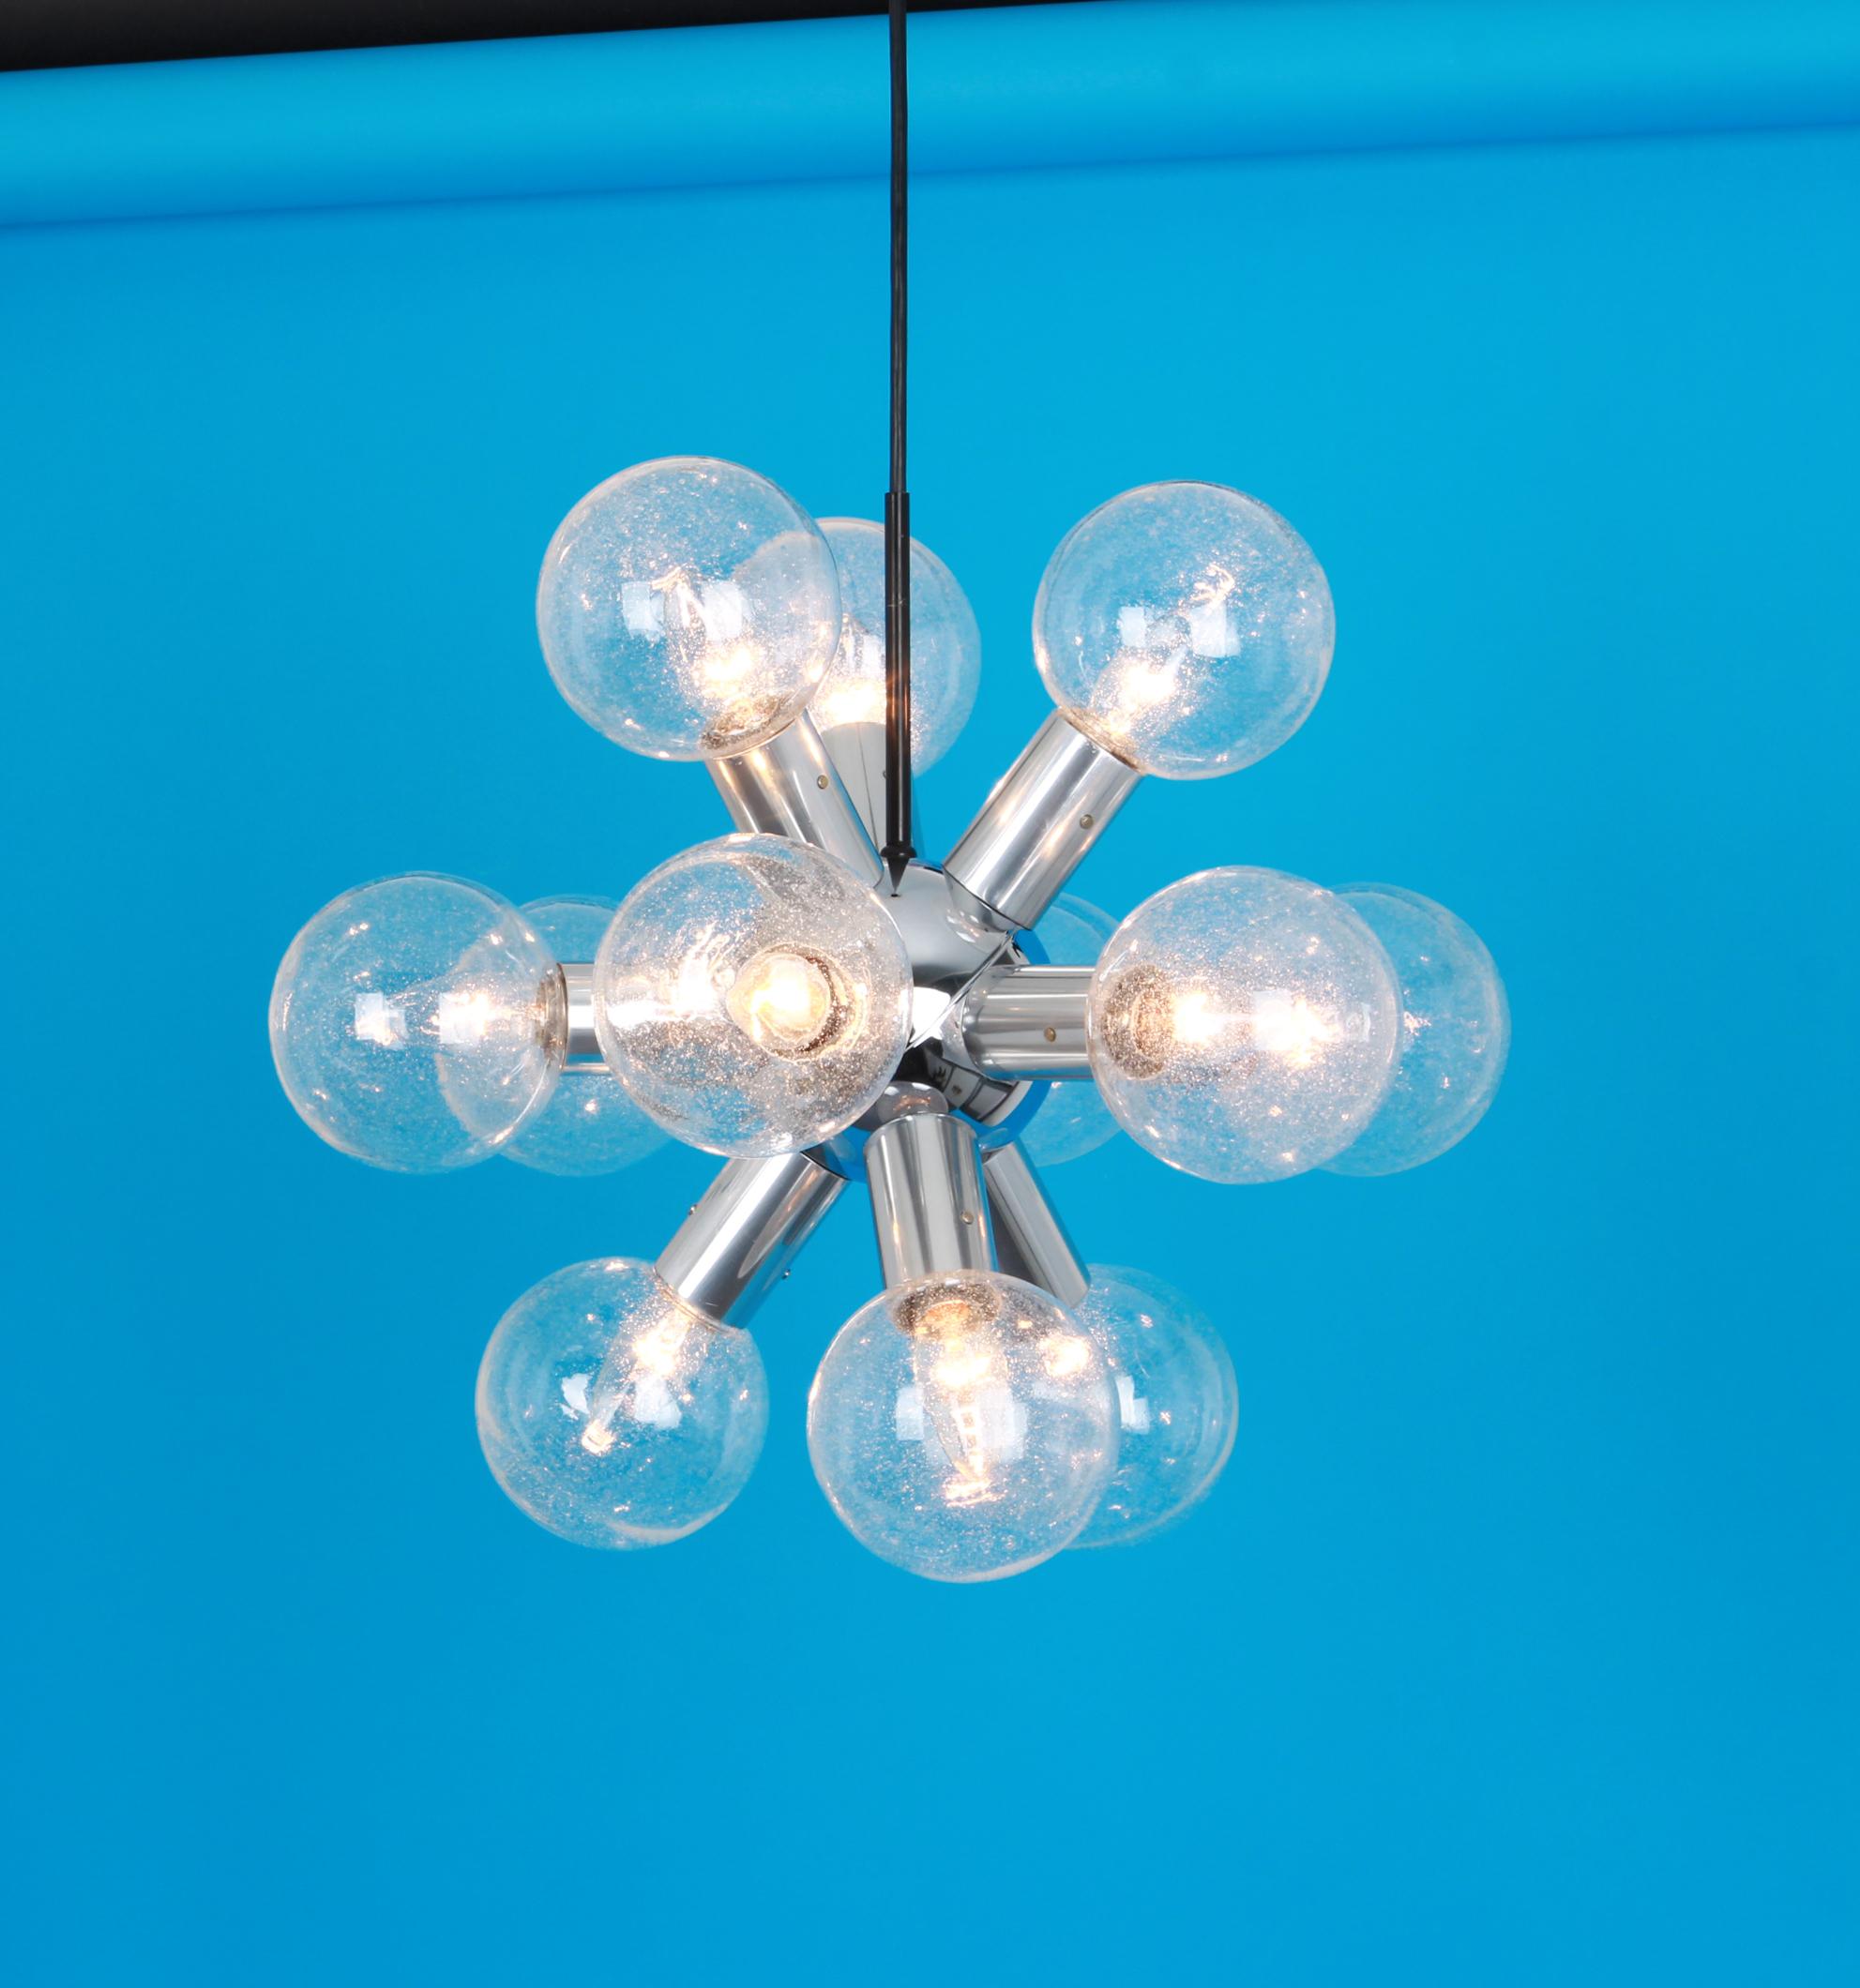 Exklusiv Poliertes Aluminium mit 12 Gläsern (mundgeblasen)
Atemberaubende Sputnik-Pendelleuchte, entworfen von Kalmar Leuchten in den 1970er Jahren.

Fassungen: Es werden 12x E14 Glühbirnen benötigt.
Glühbirnen sind nicht enthalten. Es ist möglich,